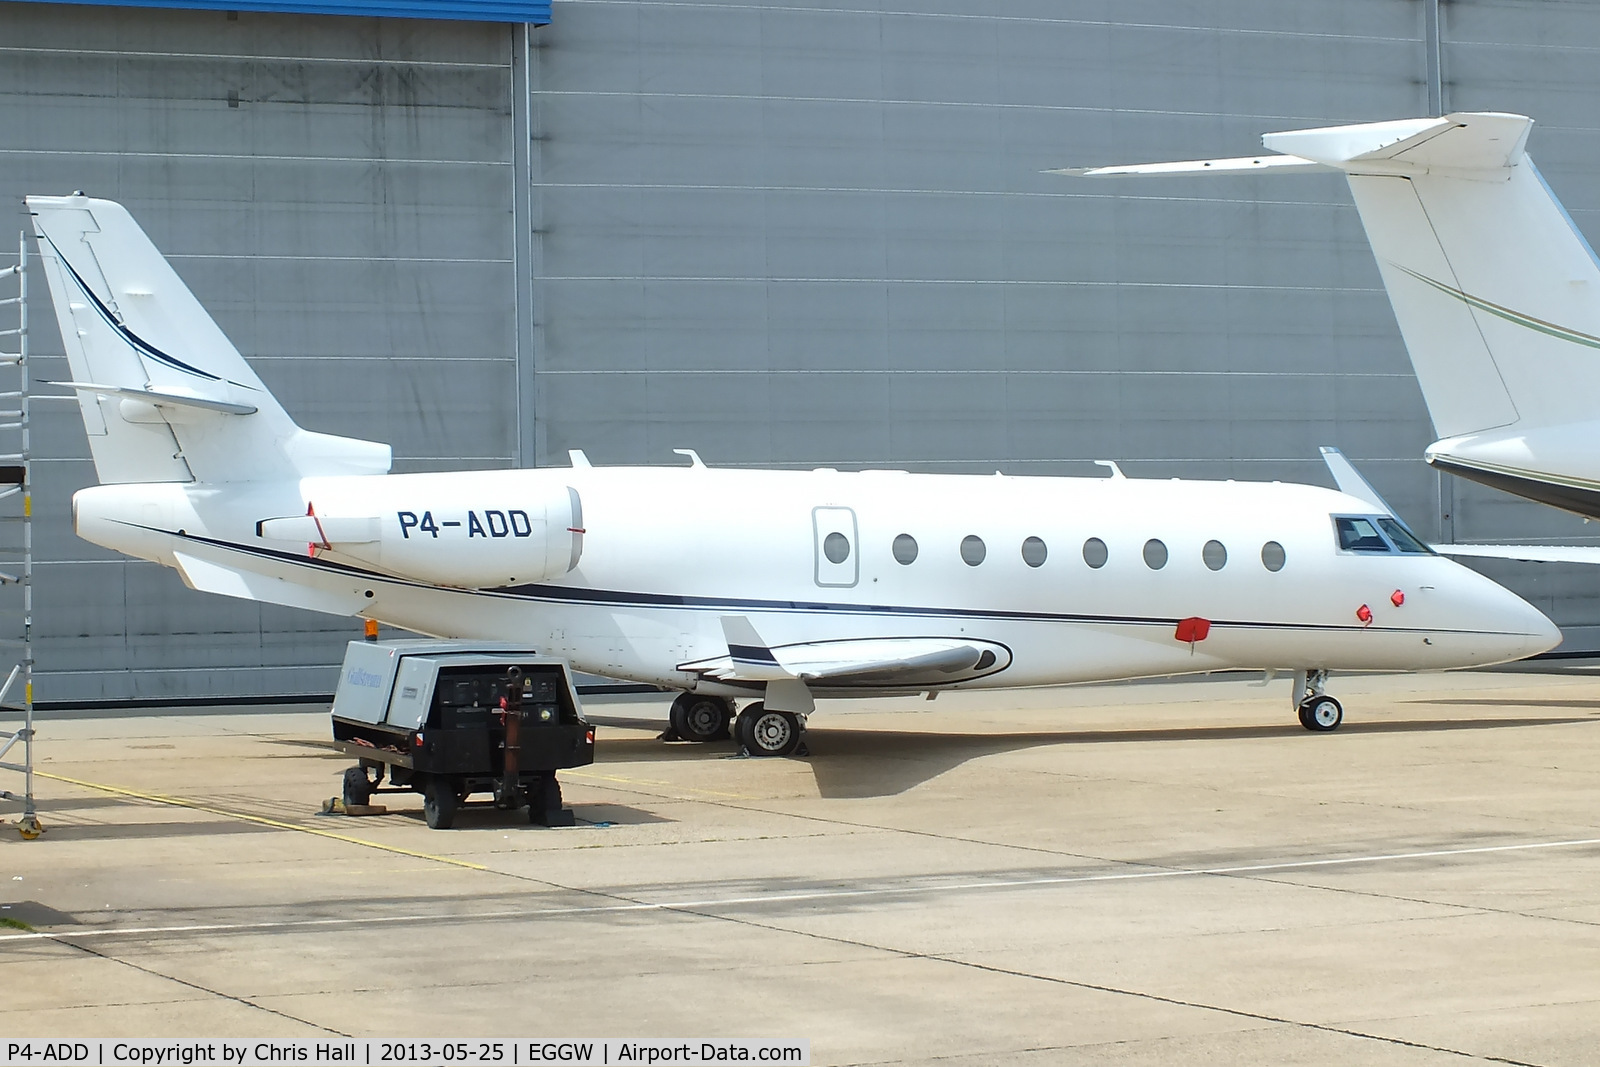 P4-ADD, 2008 Israel Aerospace Industries G200 C/N 200, IAI Gulfstream G200 Galaxy